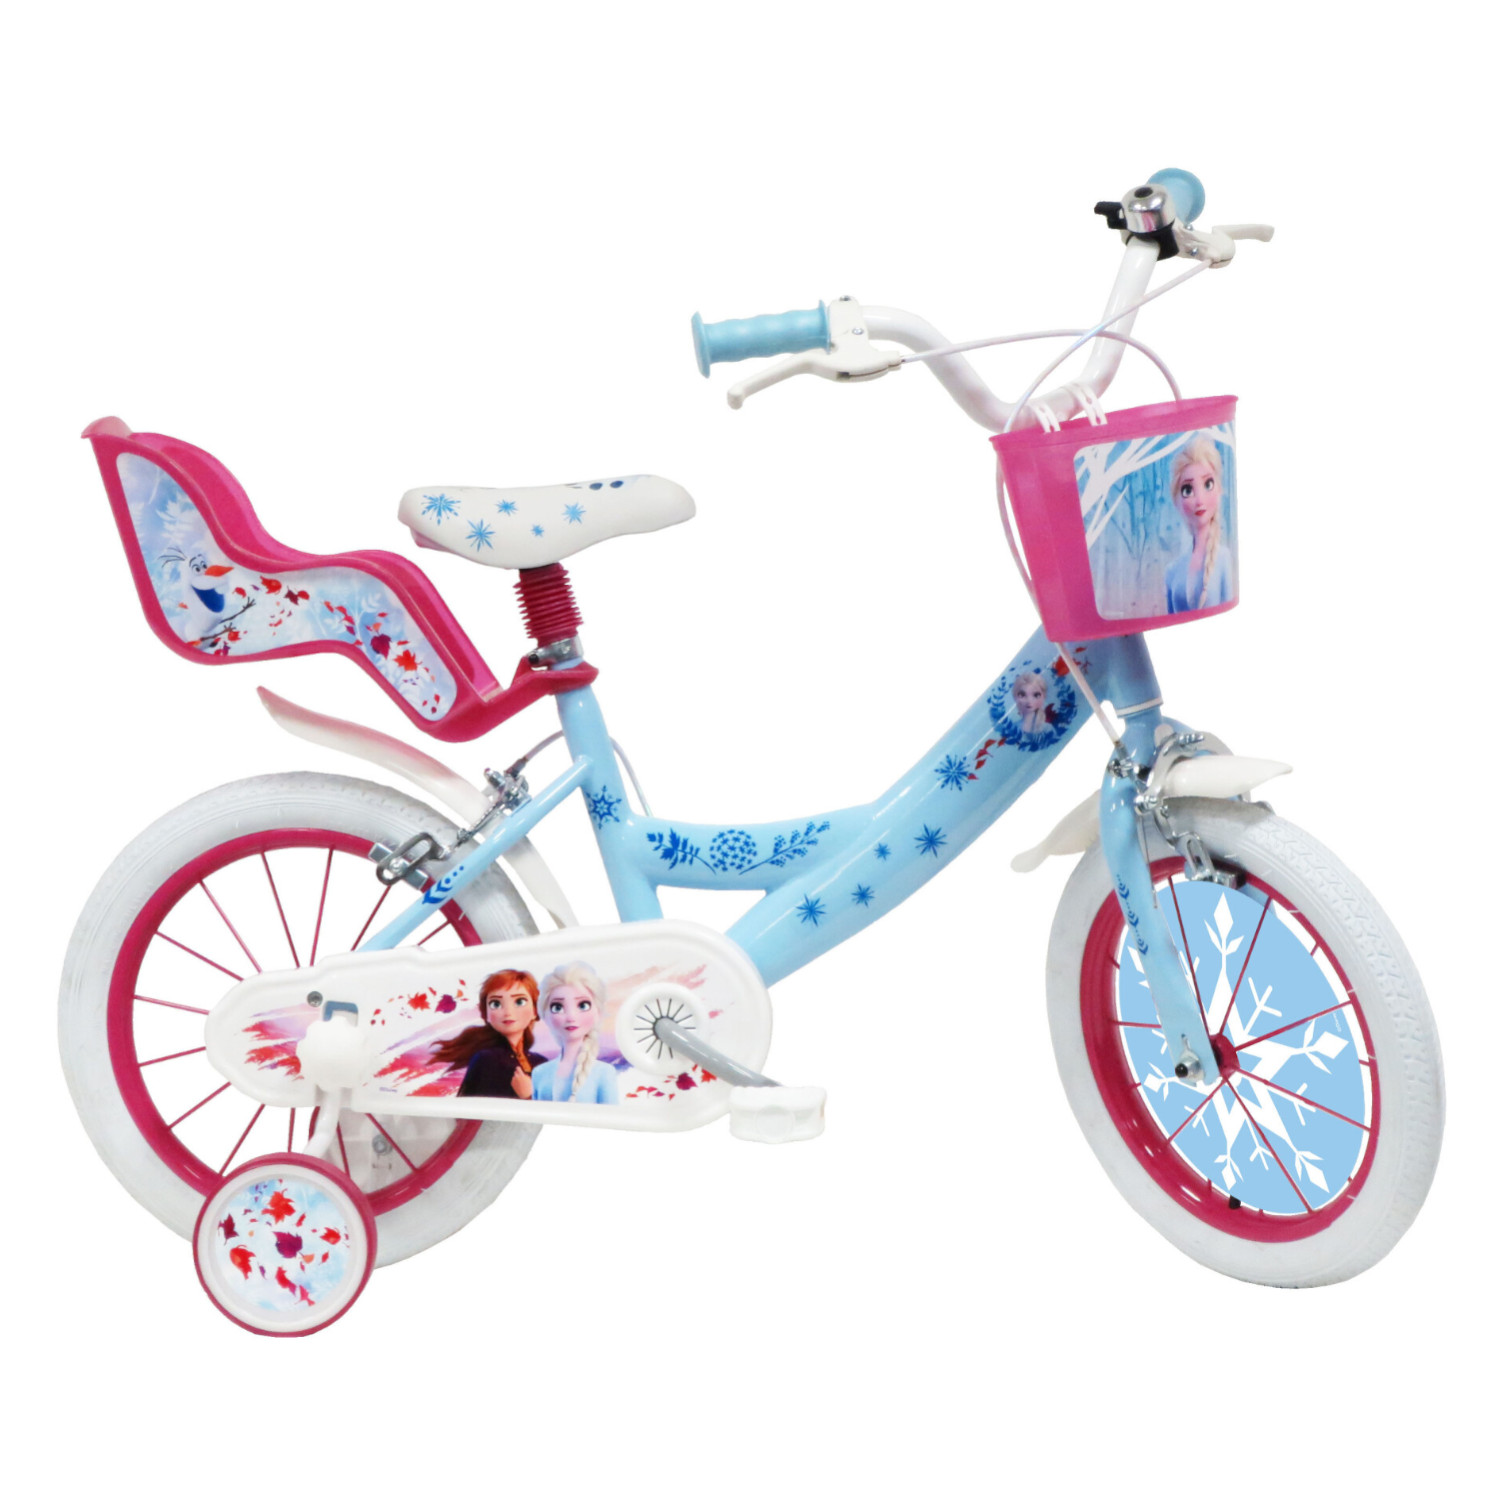 Bicicletta misura da 16 pollici disney frozen con cestino e portabambole - adatta per bambini 4-6 anni - Frozen